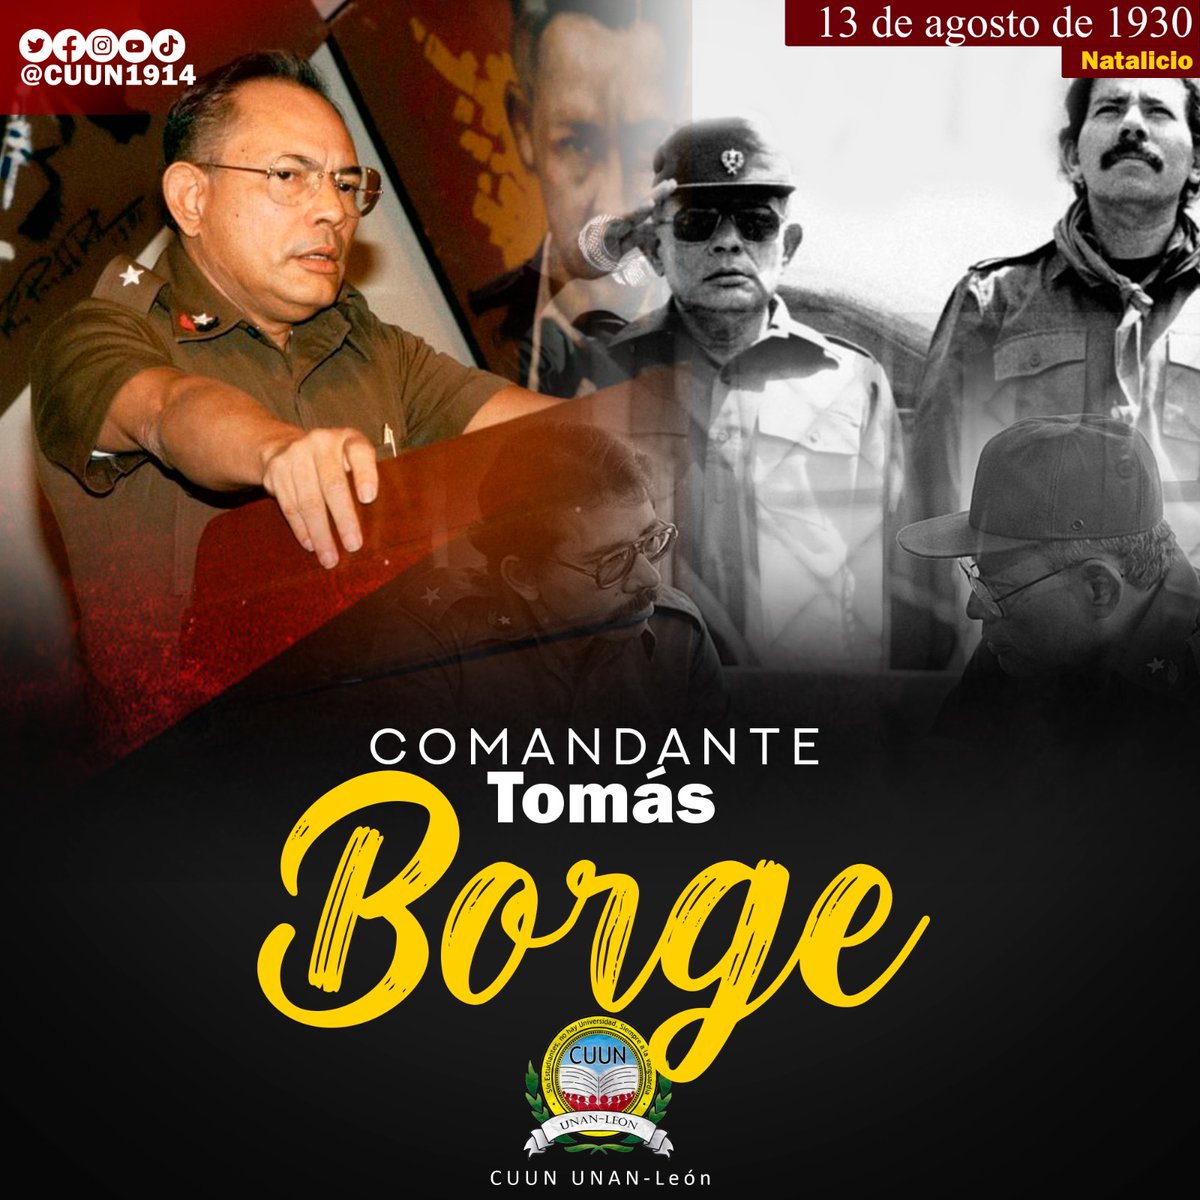 #13deAgosto || Saludamos el Natalicio de nuestro comandante Tomás Borge Martínez.

#CUUN1914